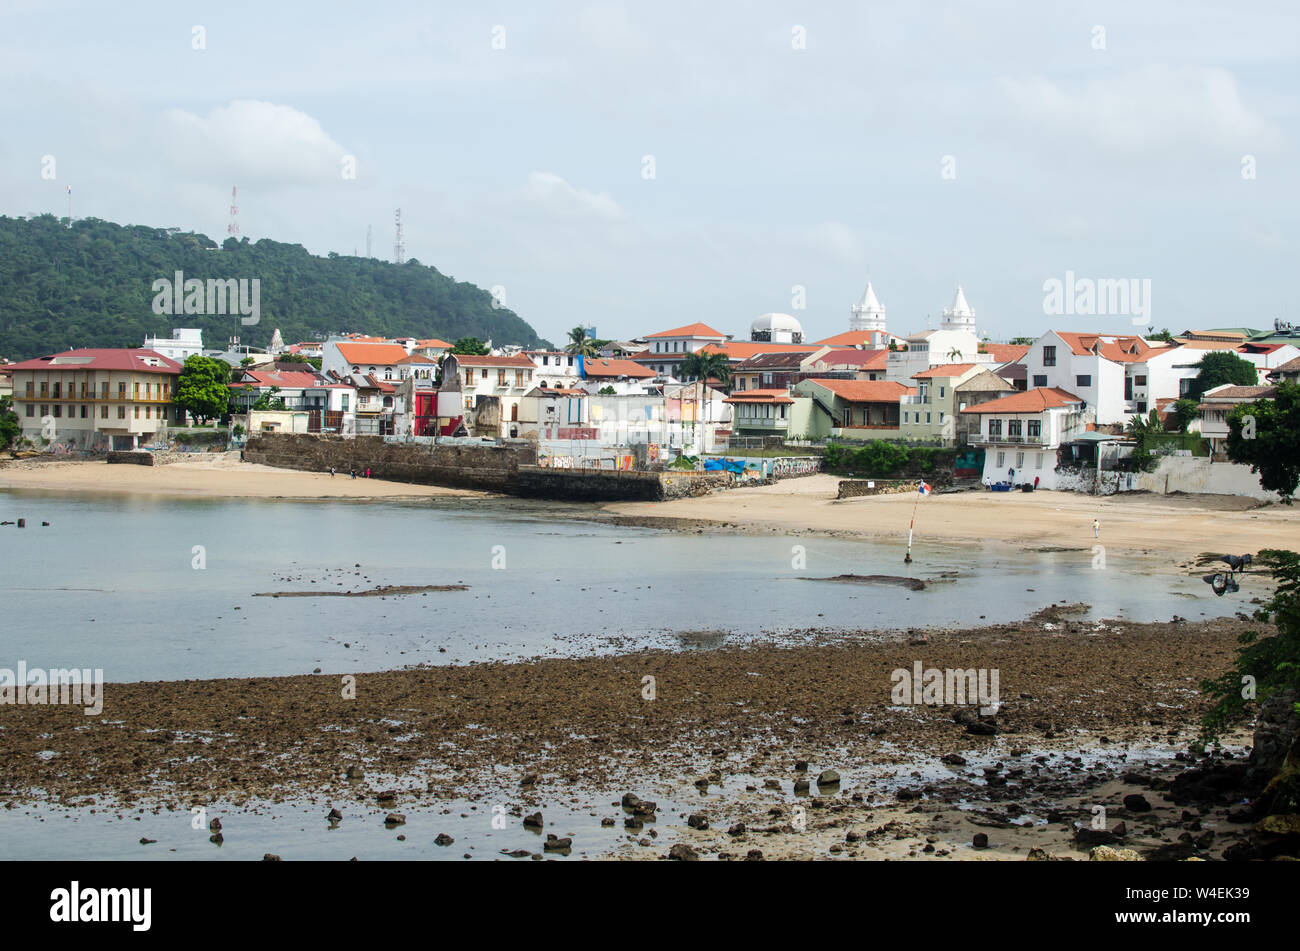 La vista horizontal del Casco Viejo, un encantador barrio histórico de la Ciudad de Panamá Foto de stock